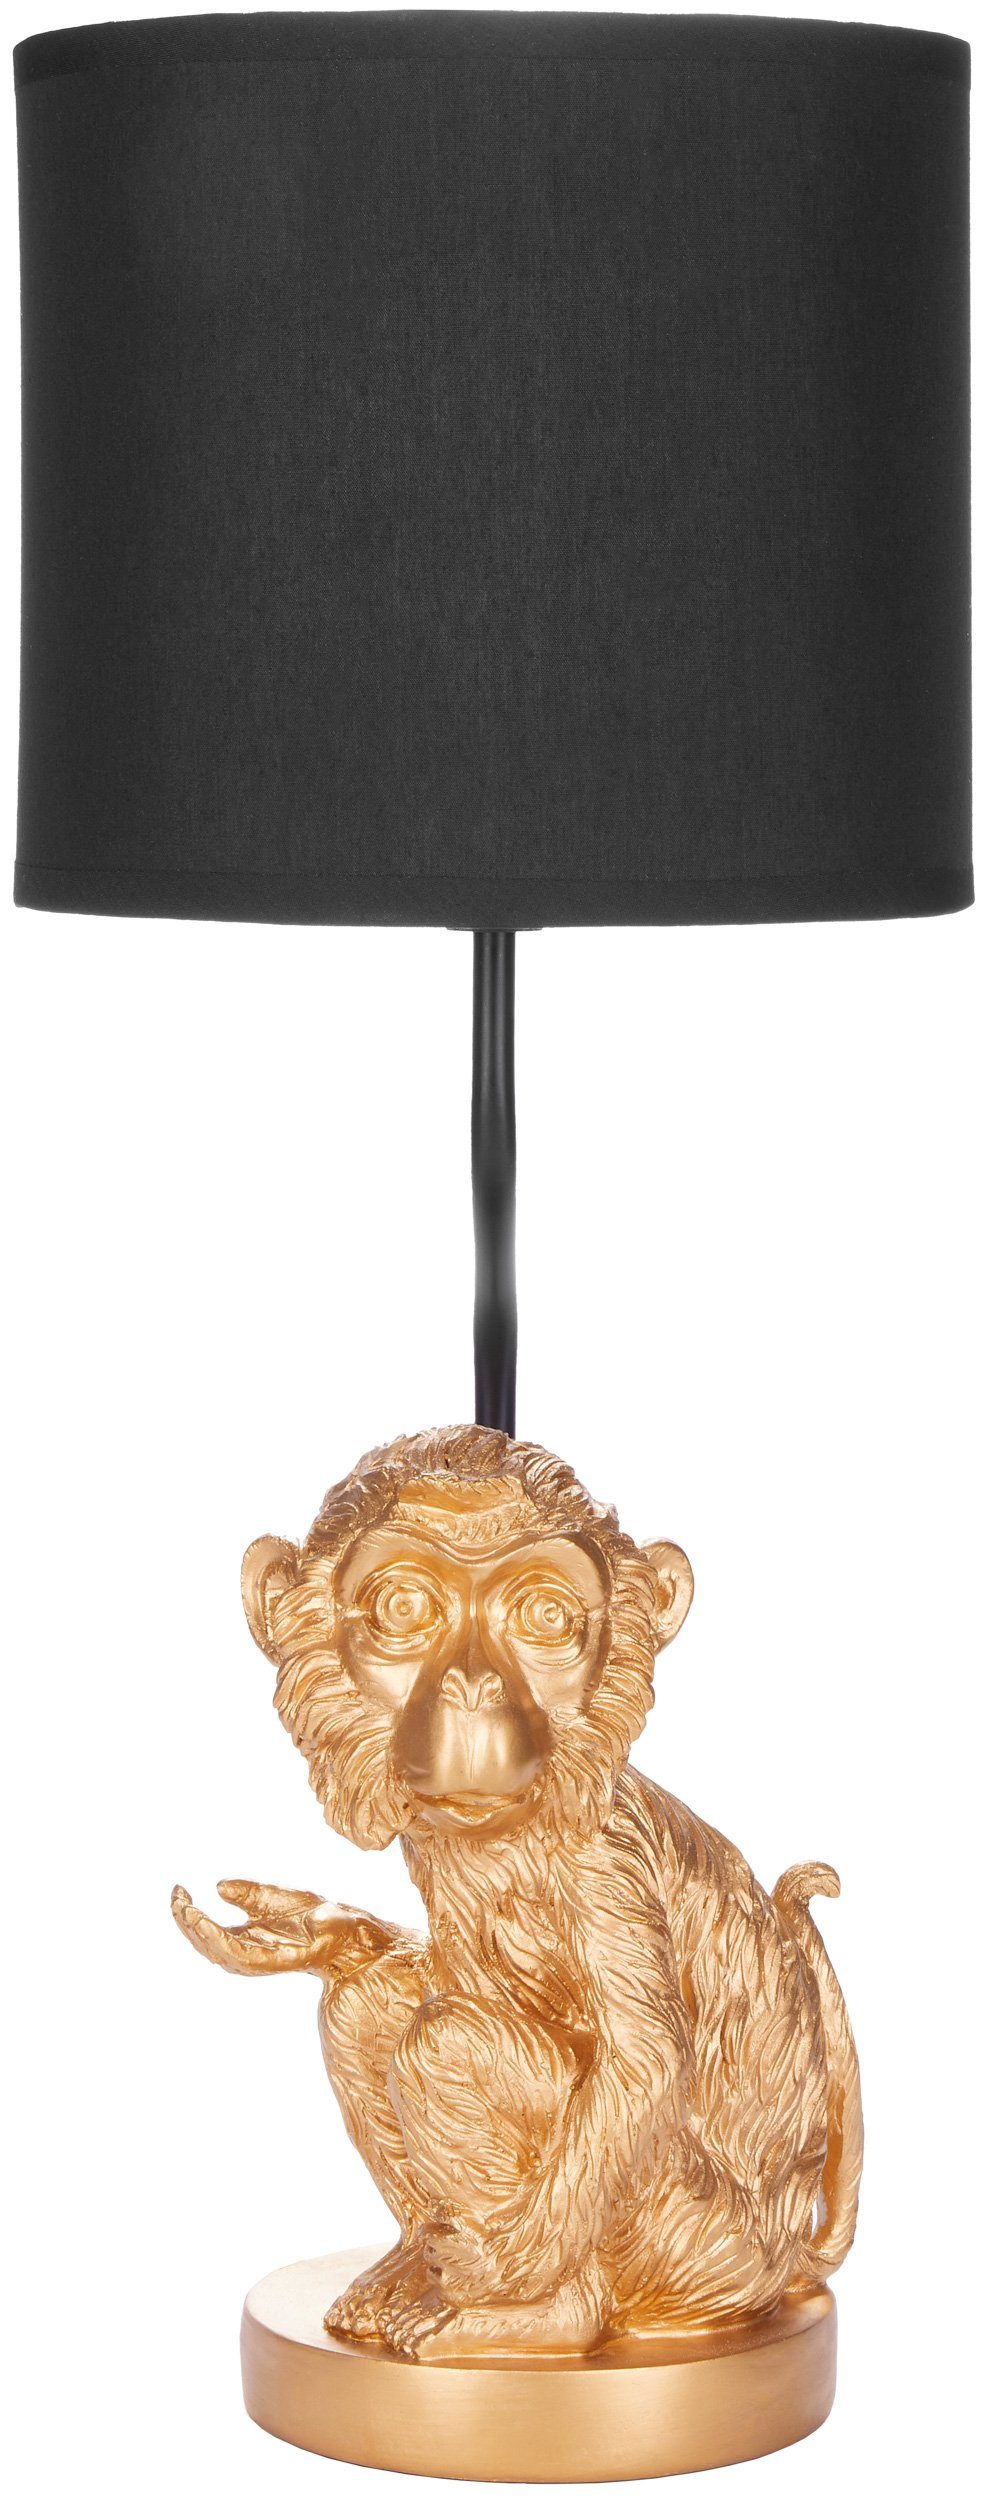 BRUBAKER Nachttischlampe »Tischleuchte Kleines Äffchen Gold, Tischlampe«,  Affe Motiv Lampe mit Keramikfuß, Höhe 52 cm online kaufen | OTTO